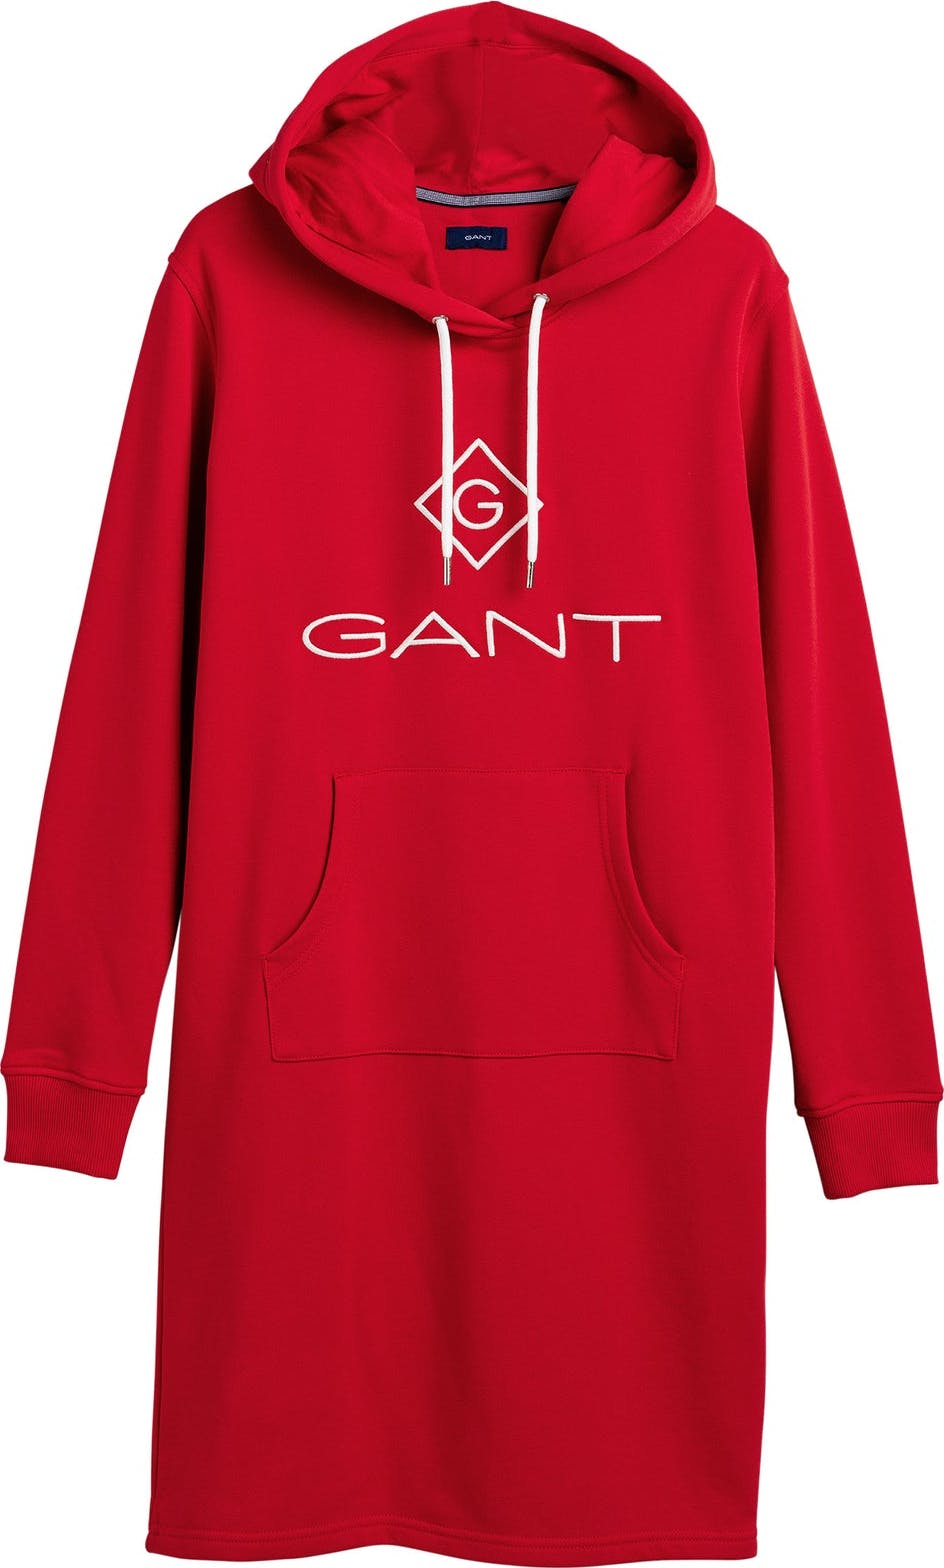 Gant Lock Up Hoodie Dress - Bright Red - GANT - Kjoler - VILLOID.no